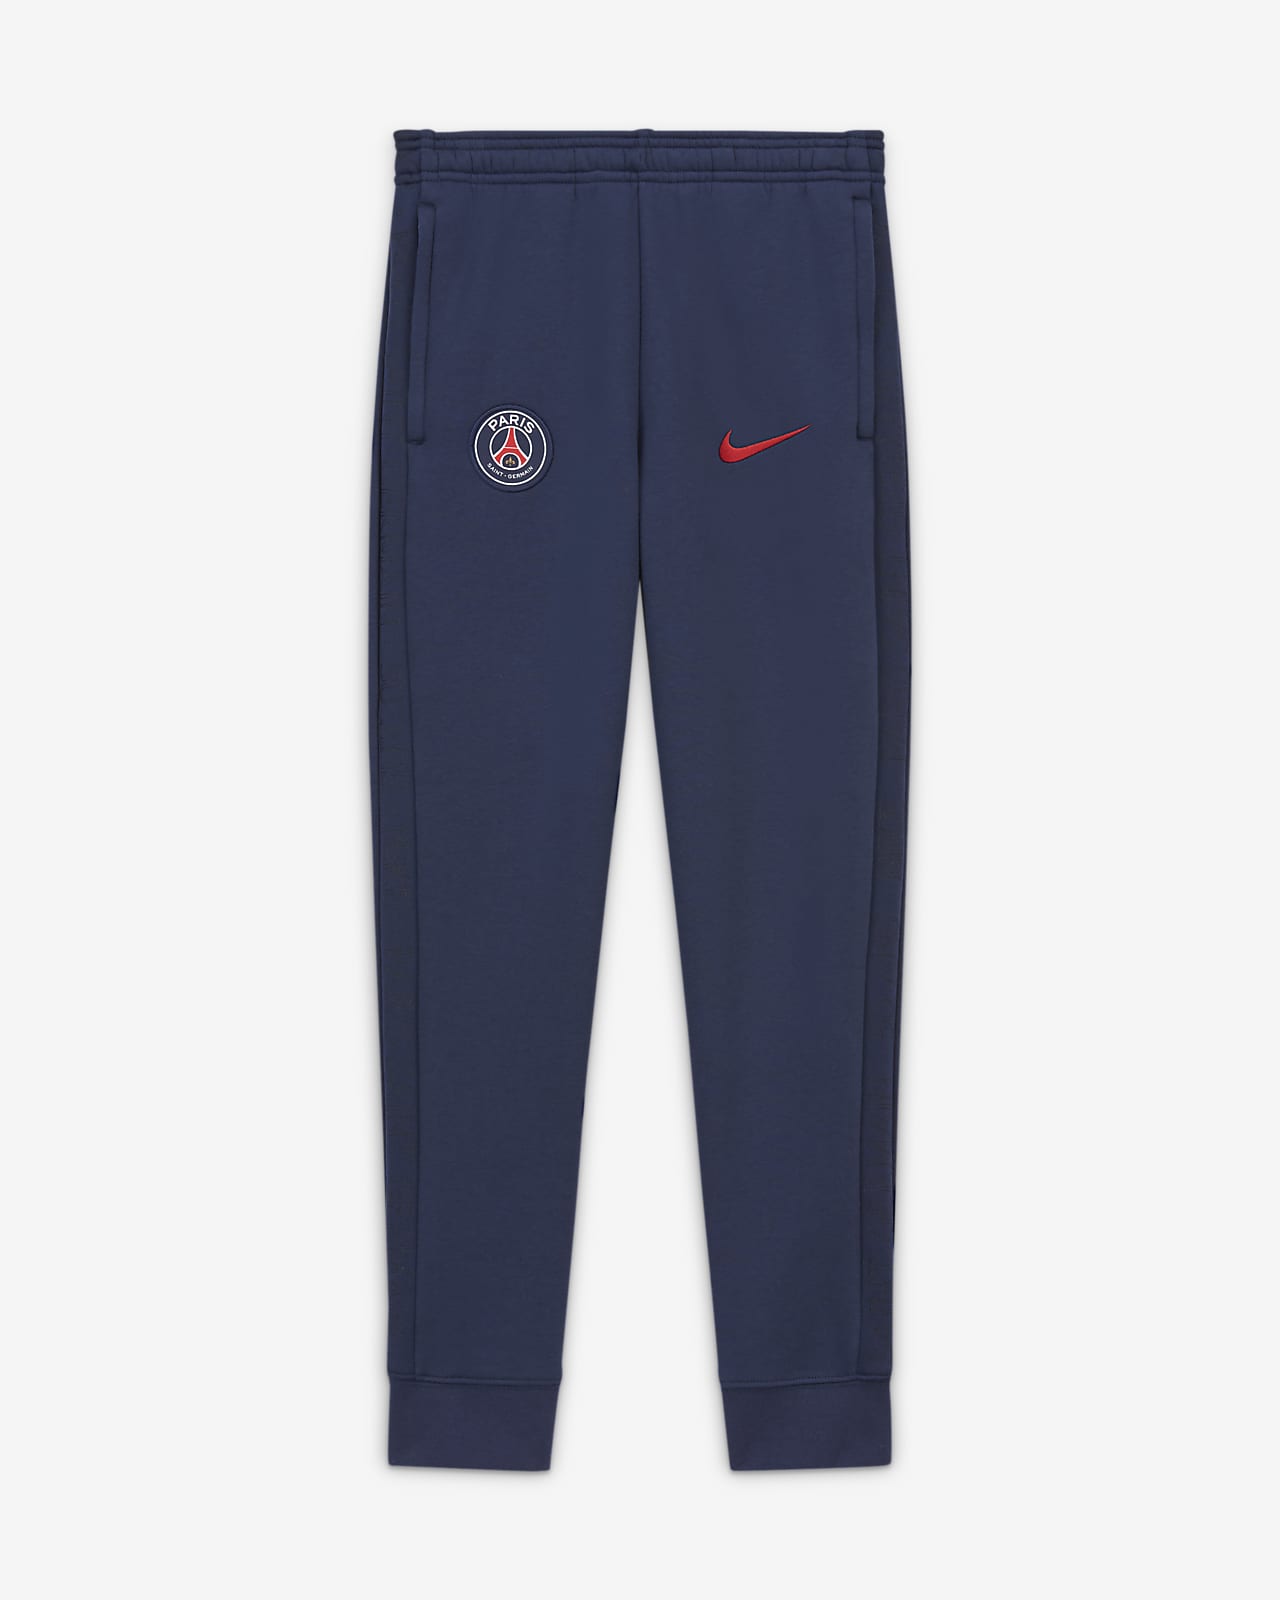 Paris Saint-Germain Older Kids' Fleece Football Pants. Nike LU